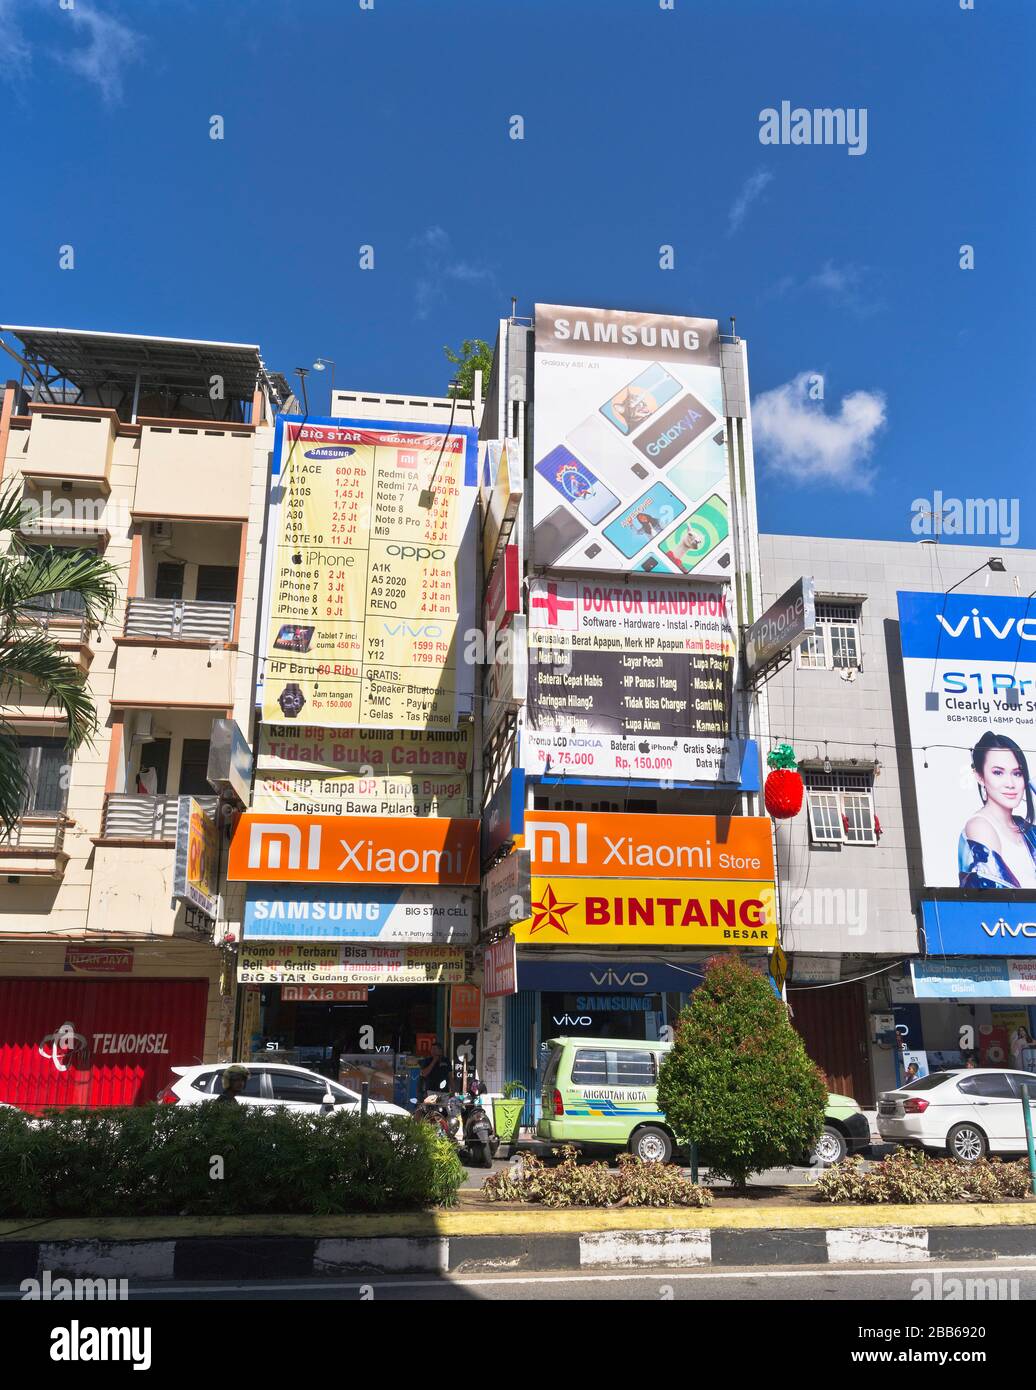 dh Publicité indonésienne AMBON MALUKU INDONESIA Street annonces bâtiments hordings ville publicité asie annonces asiatiques Banque D'Images